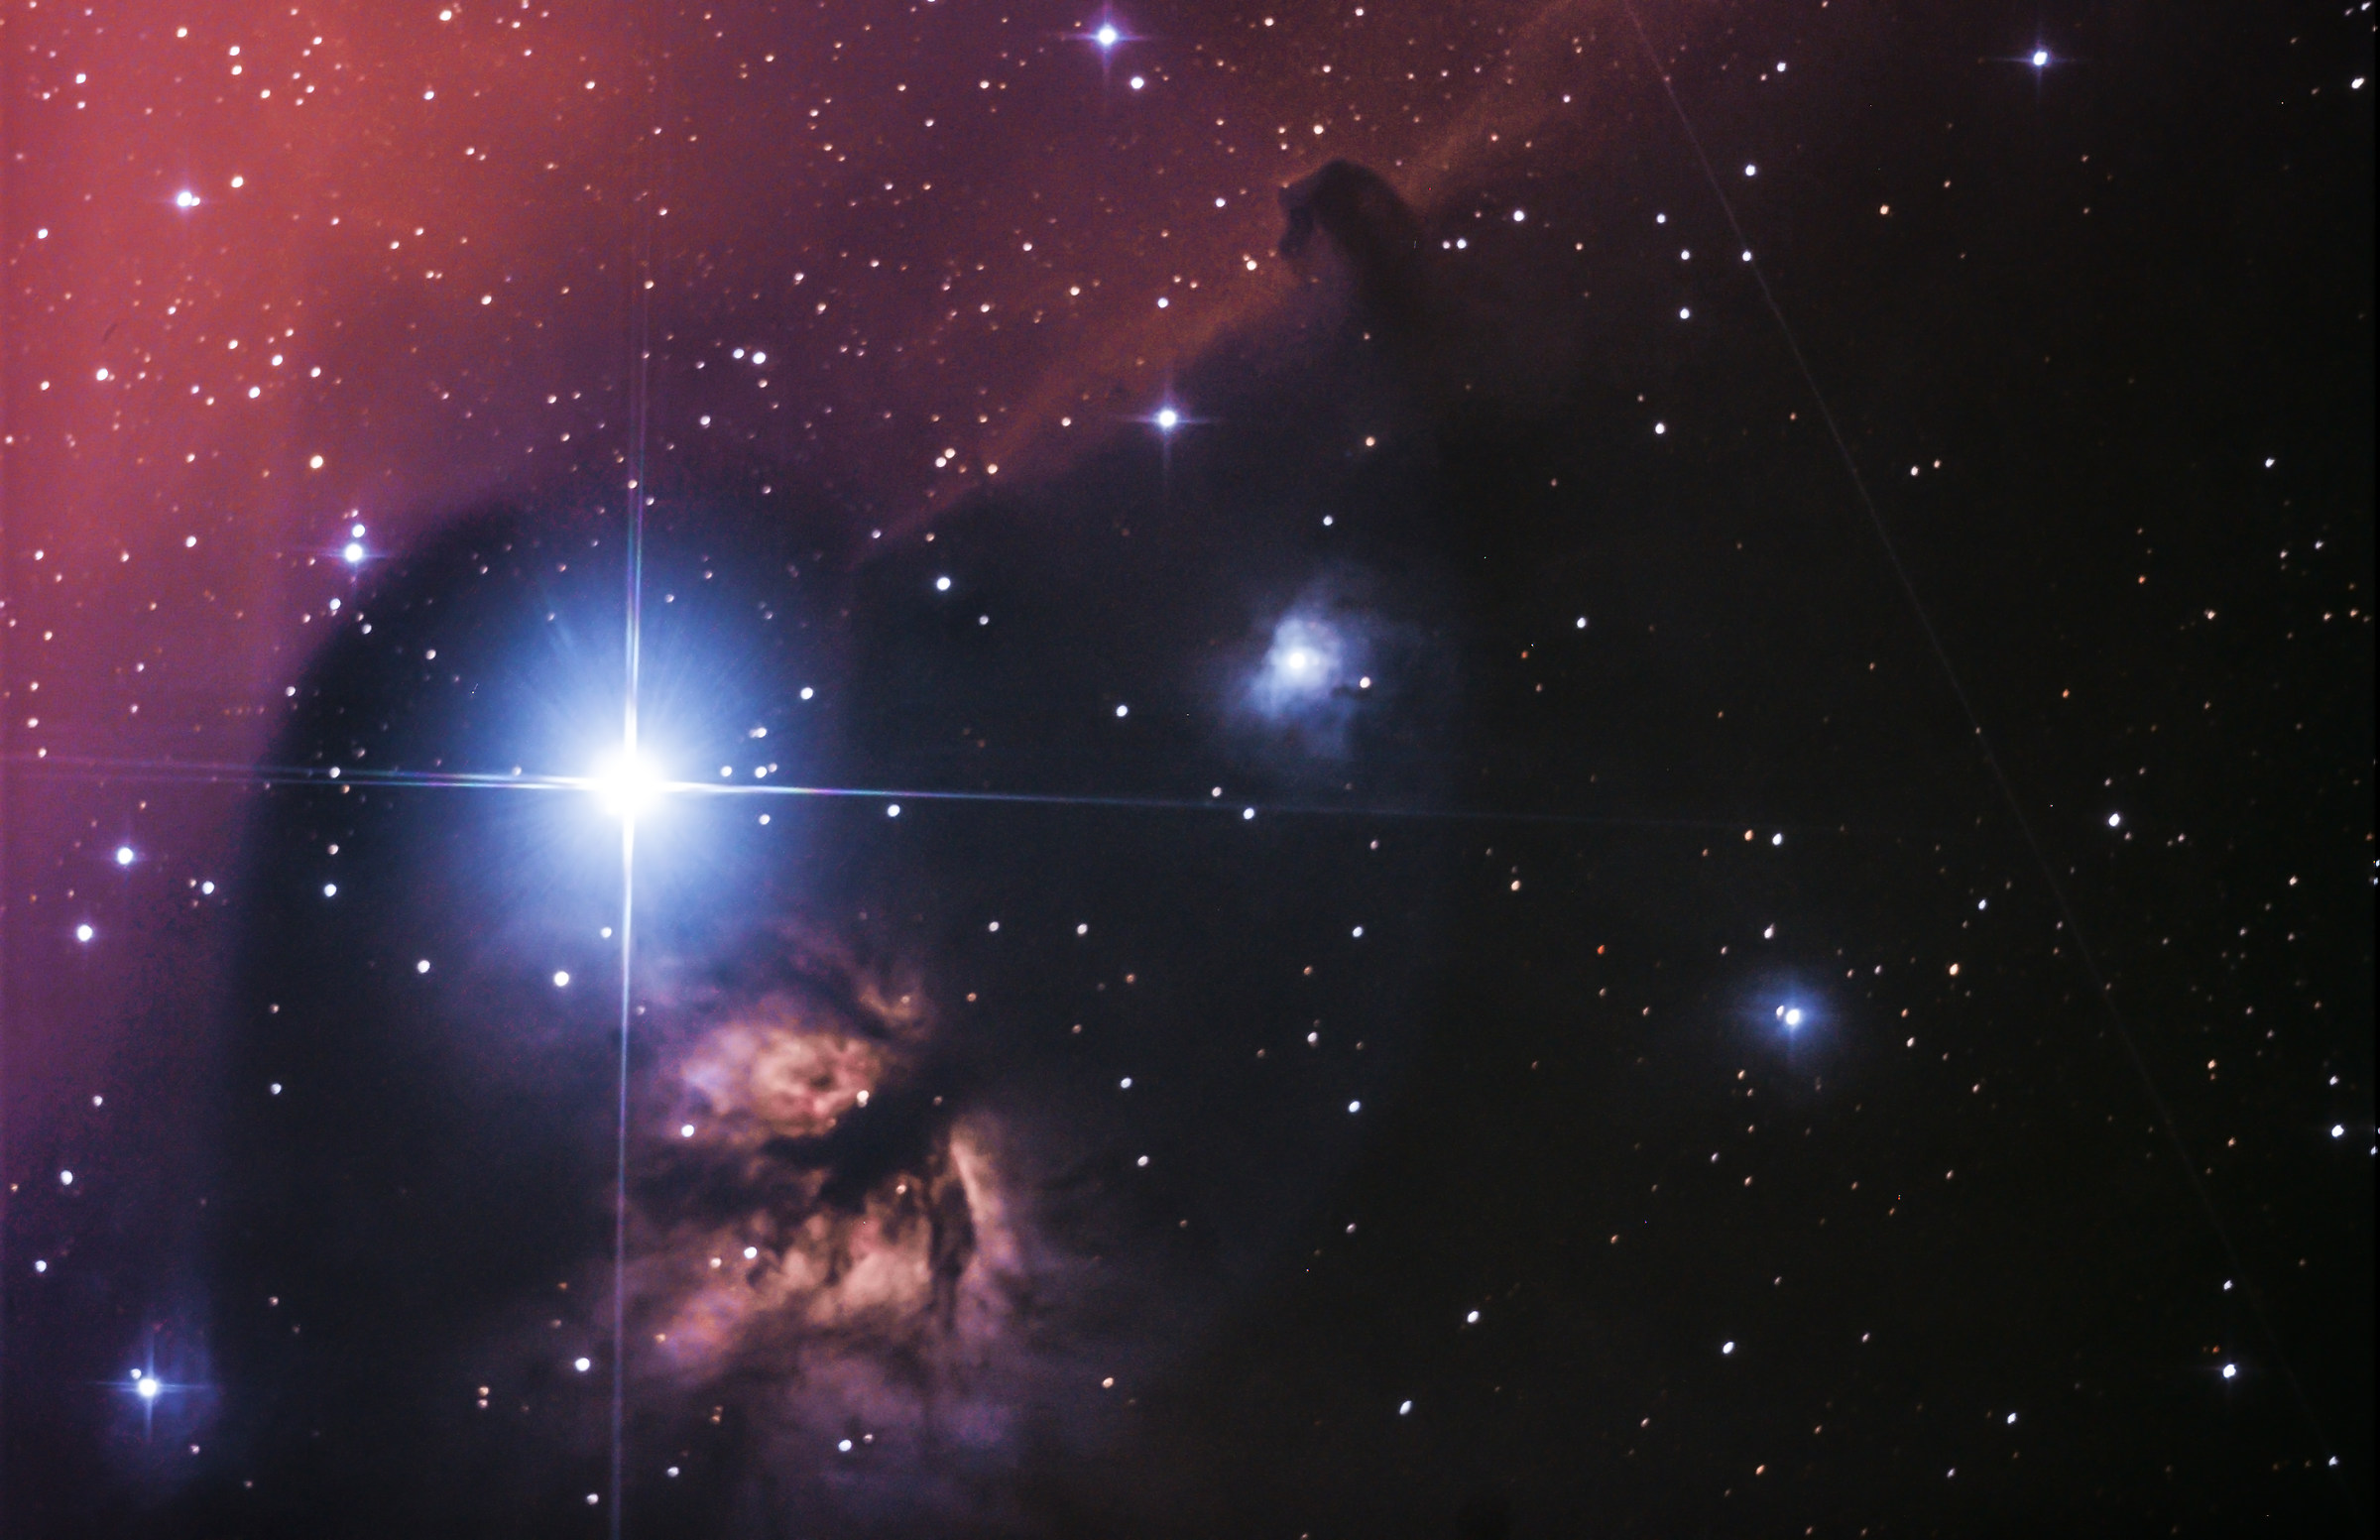 Nebulosa "Testa di cavallo" ngc2024...